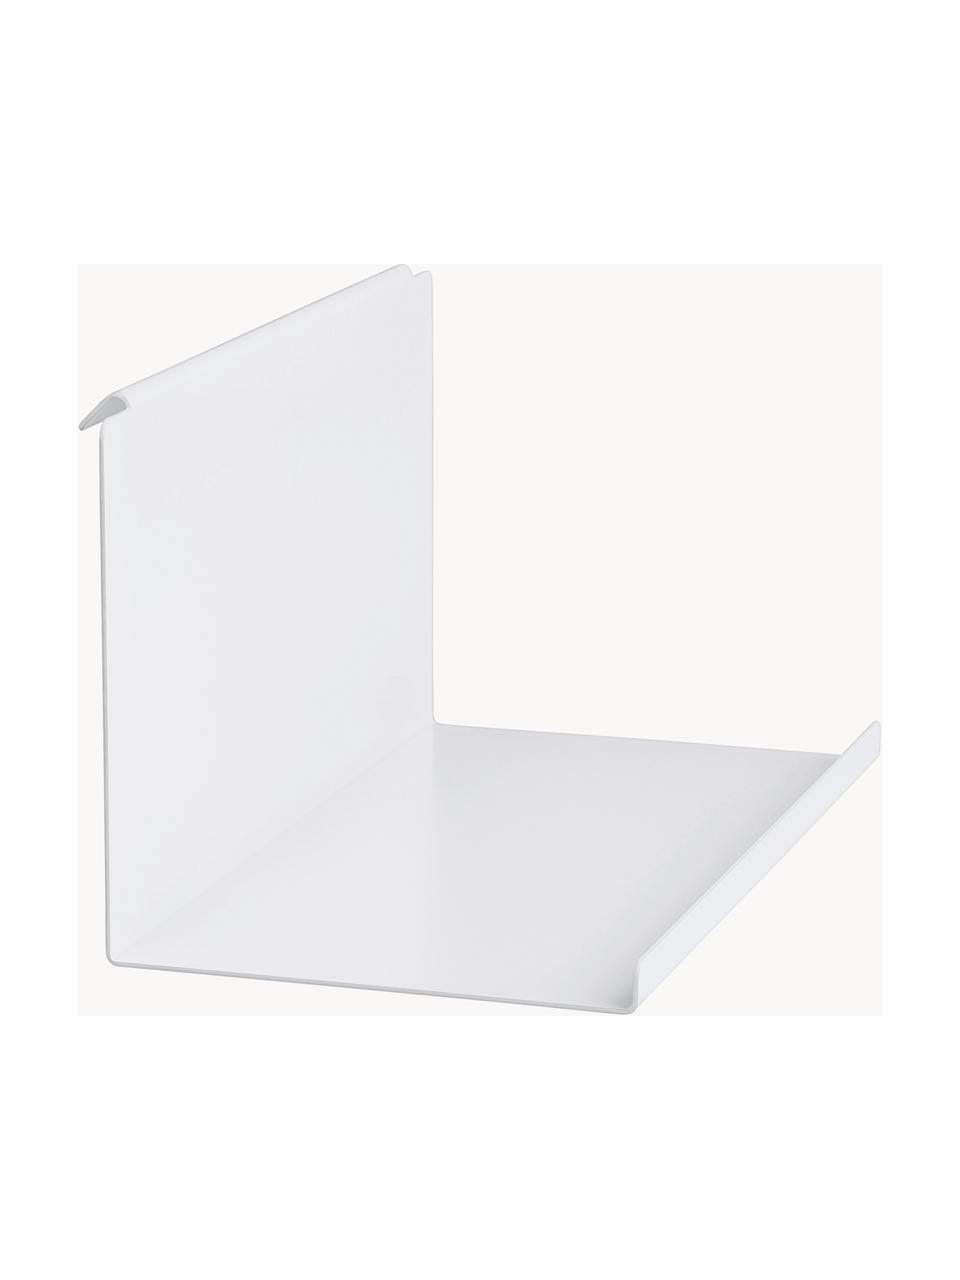 Stahl-Einlegeboden Flex, Stahl, beschichtet, Weiß, B 32 x H 13 cm